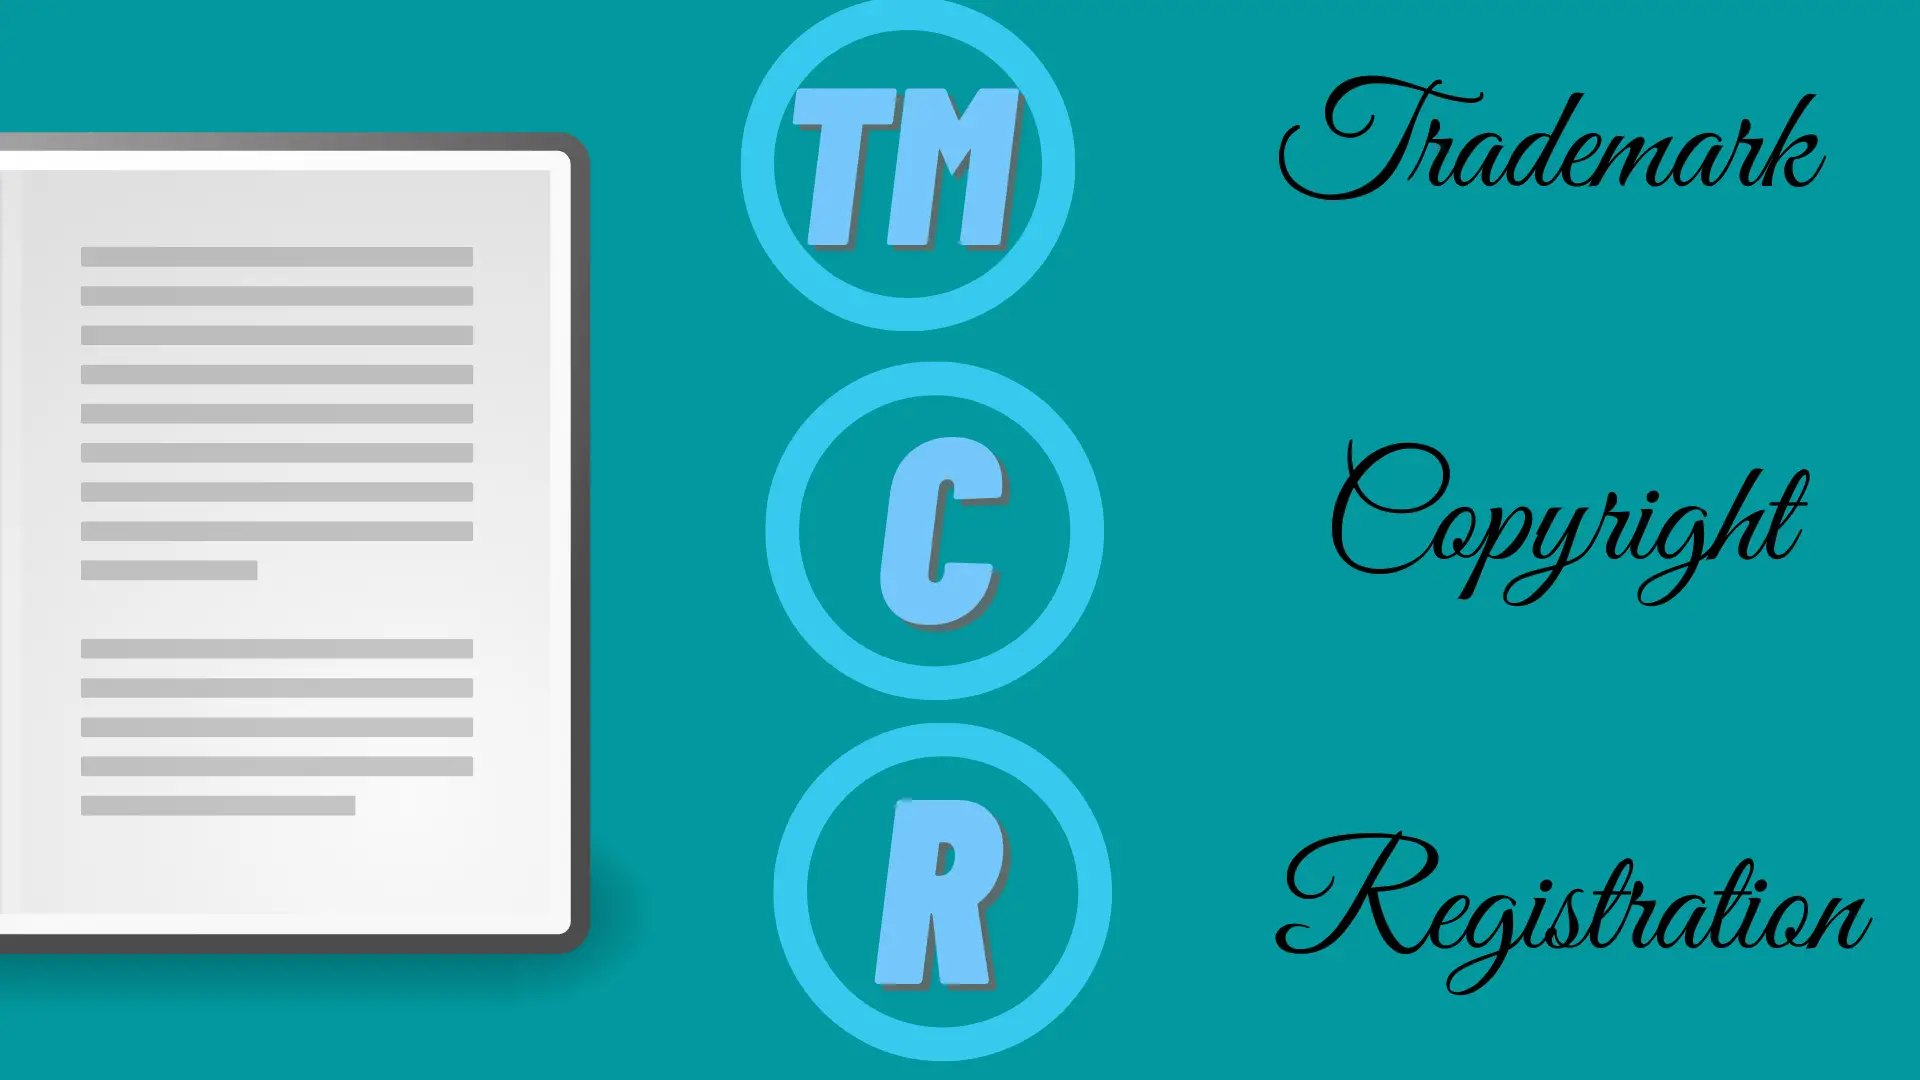 Insert Copyright, Trademark, and Registration Symbols